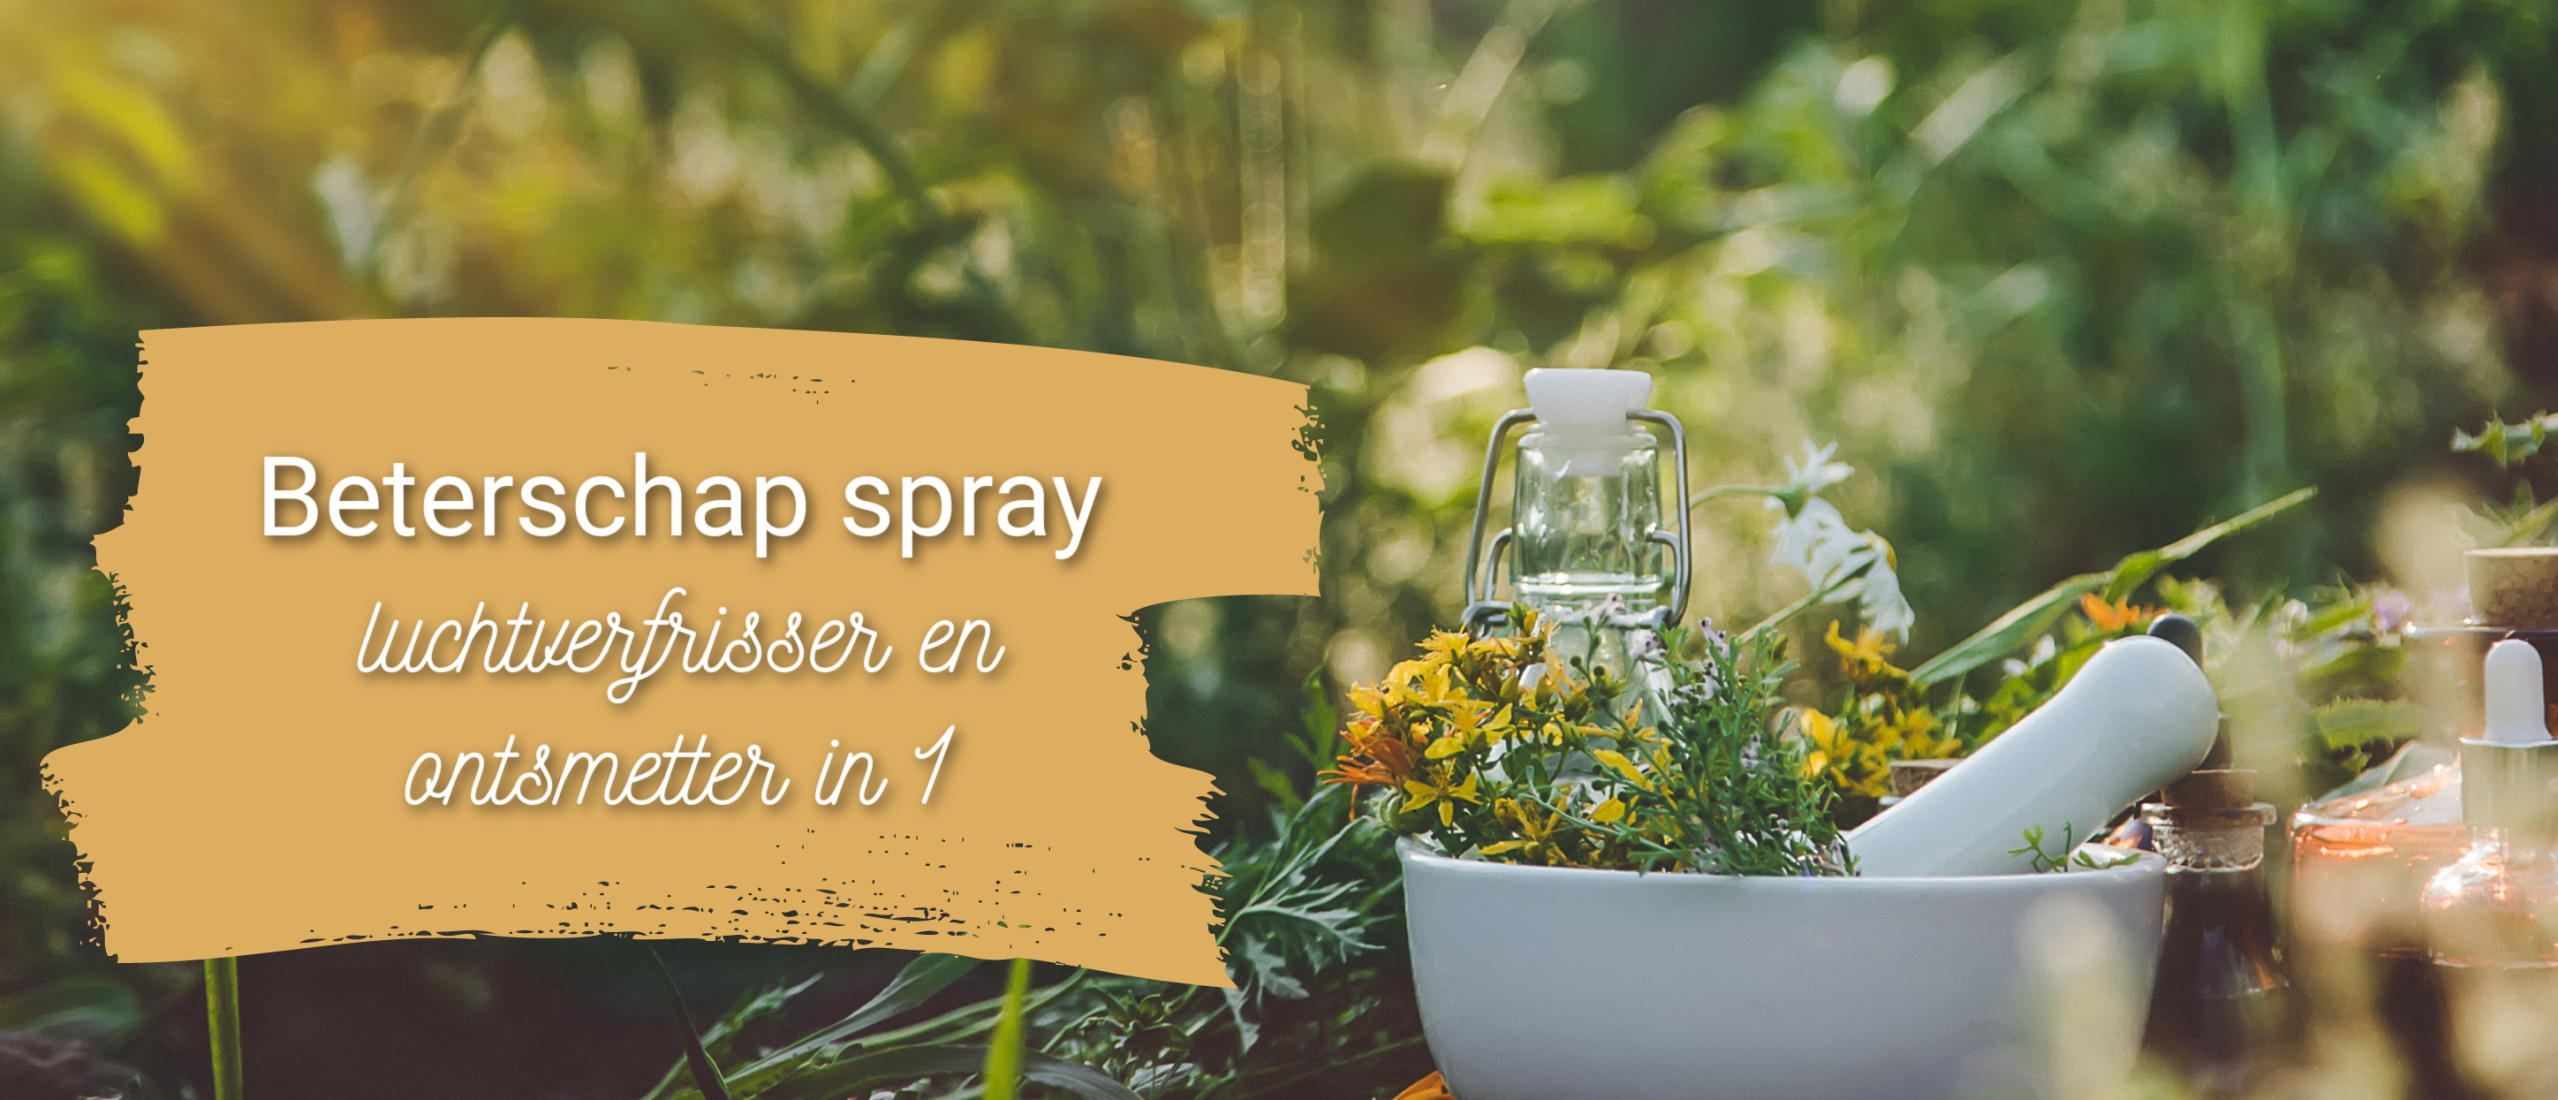 Beterschap spray, 2 in 1 luchtverfrisser en ontsmettingsmiddel.